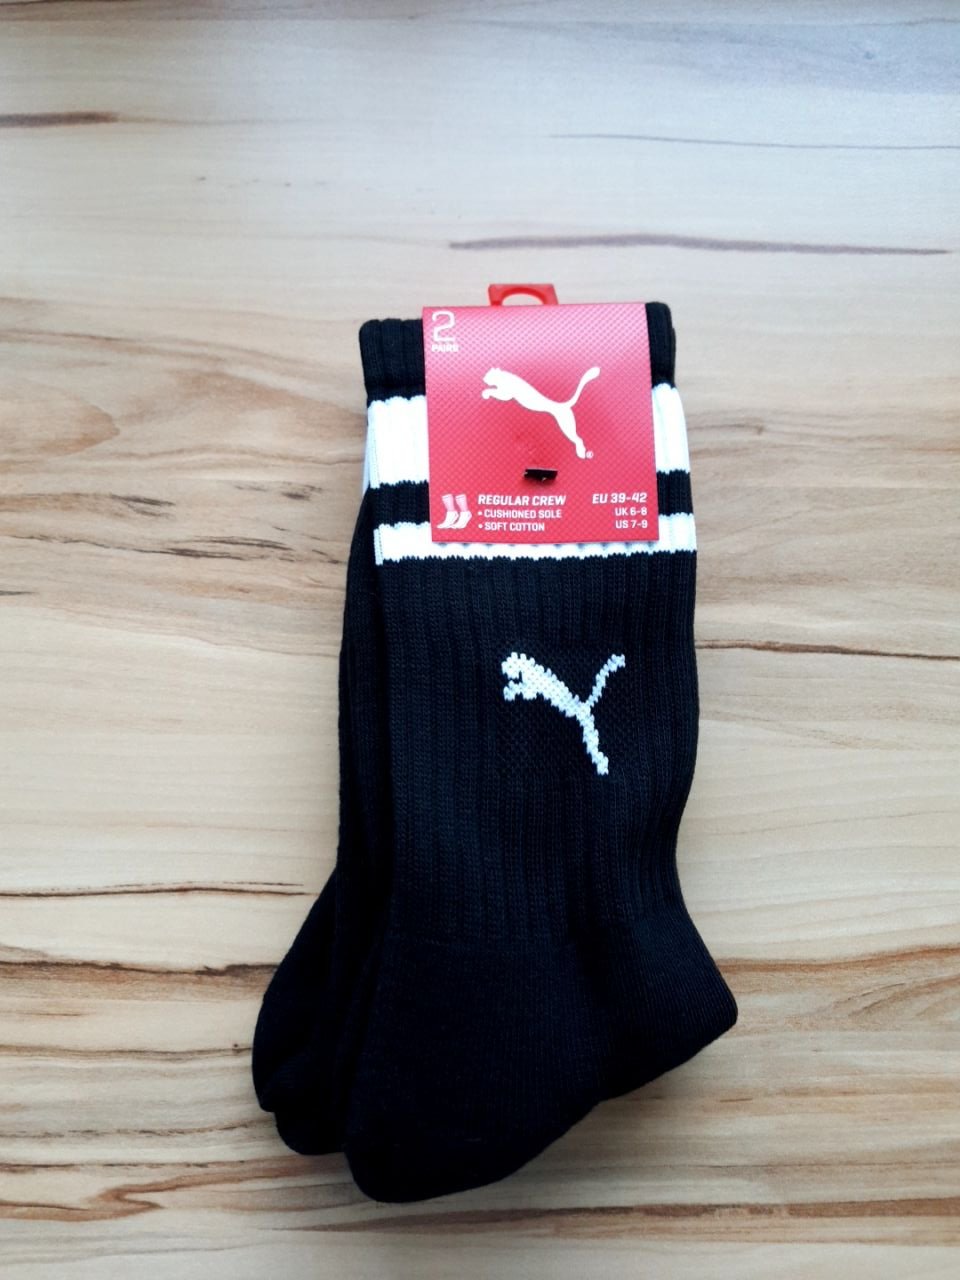 2x sportovní ponožky Puma Velikost 39-42 EUR